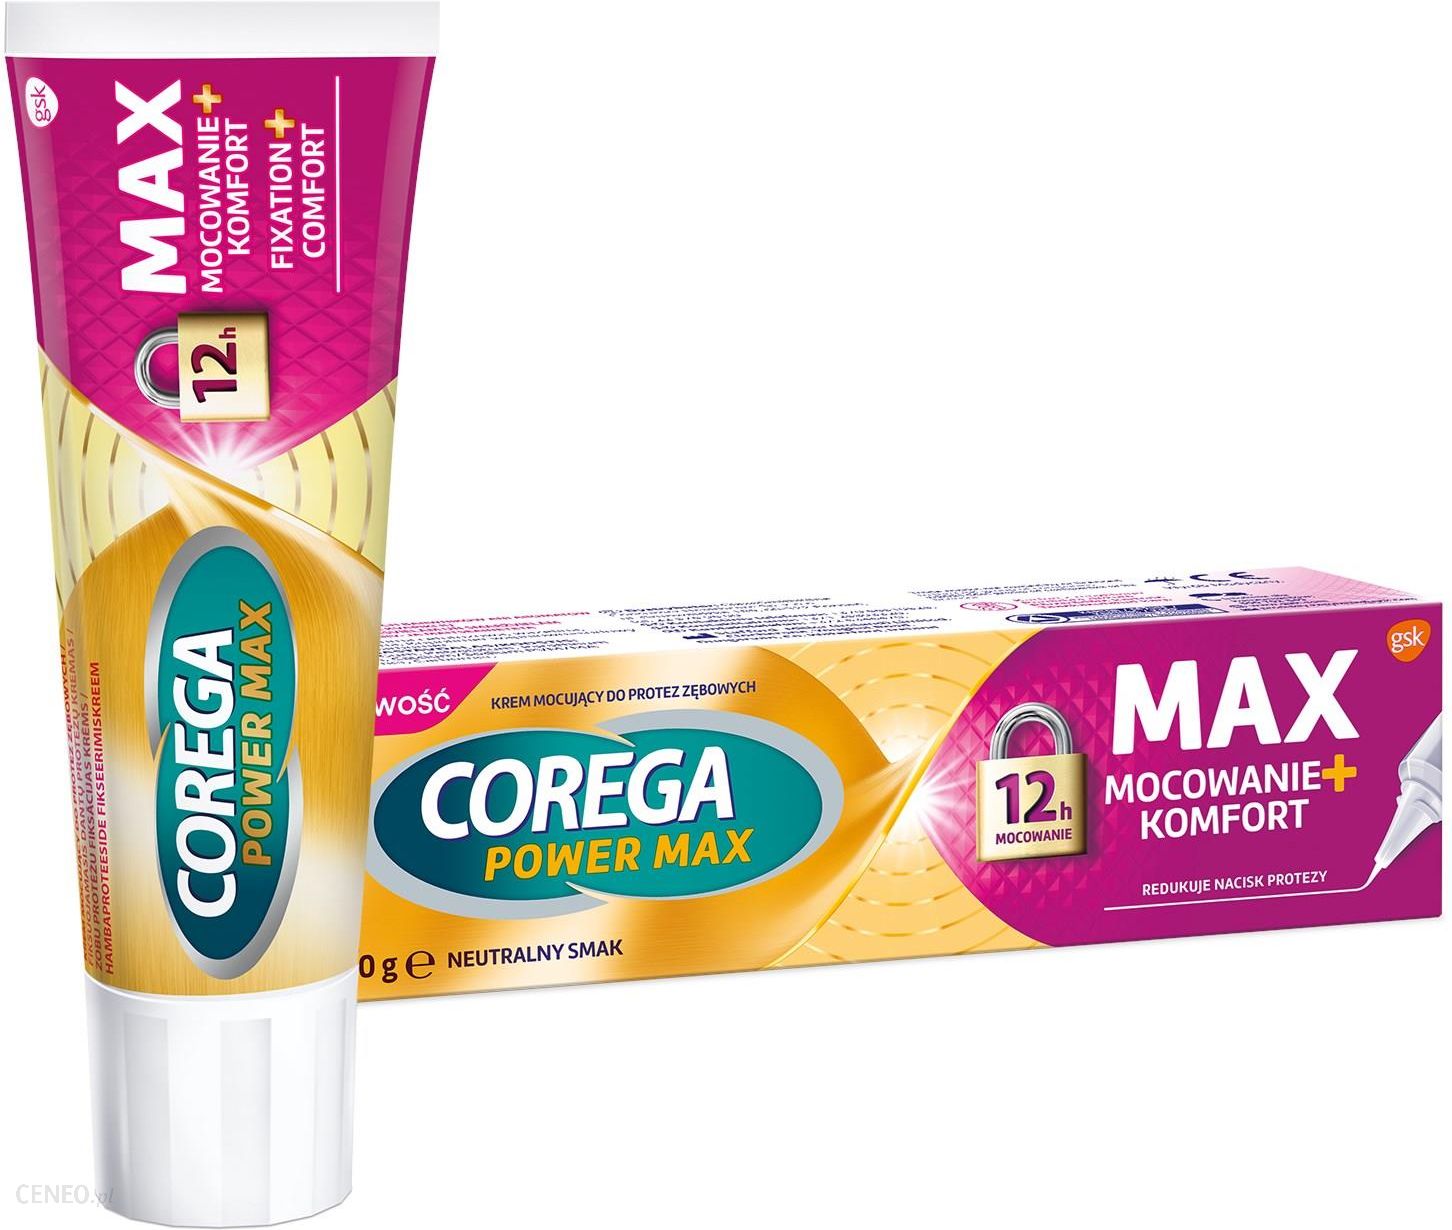 Corega Power Max Mocowanie + Komfort Neutralny Smak Krem mocujący do protez zębowych 40g